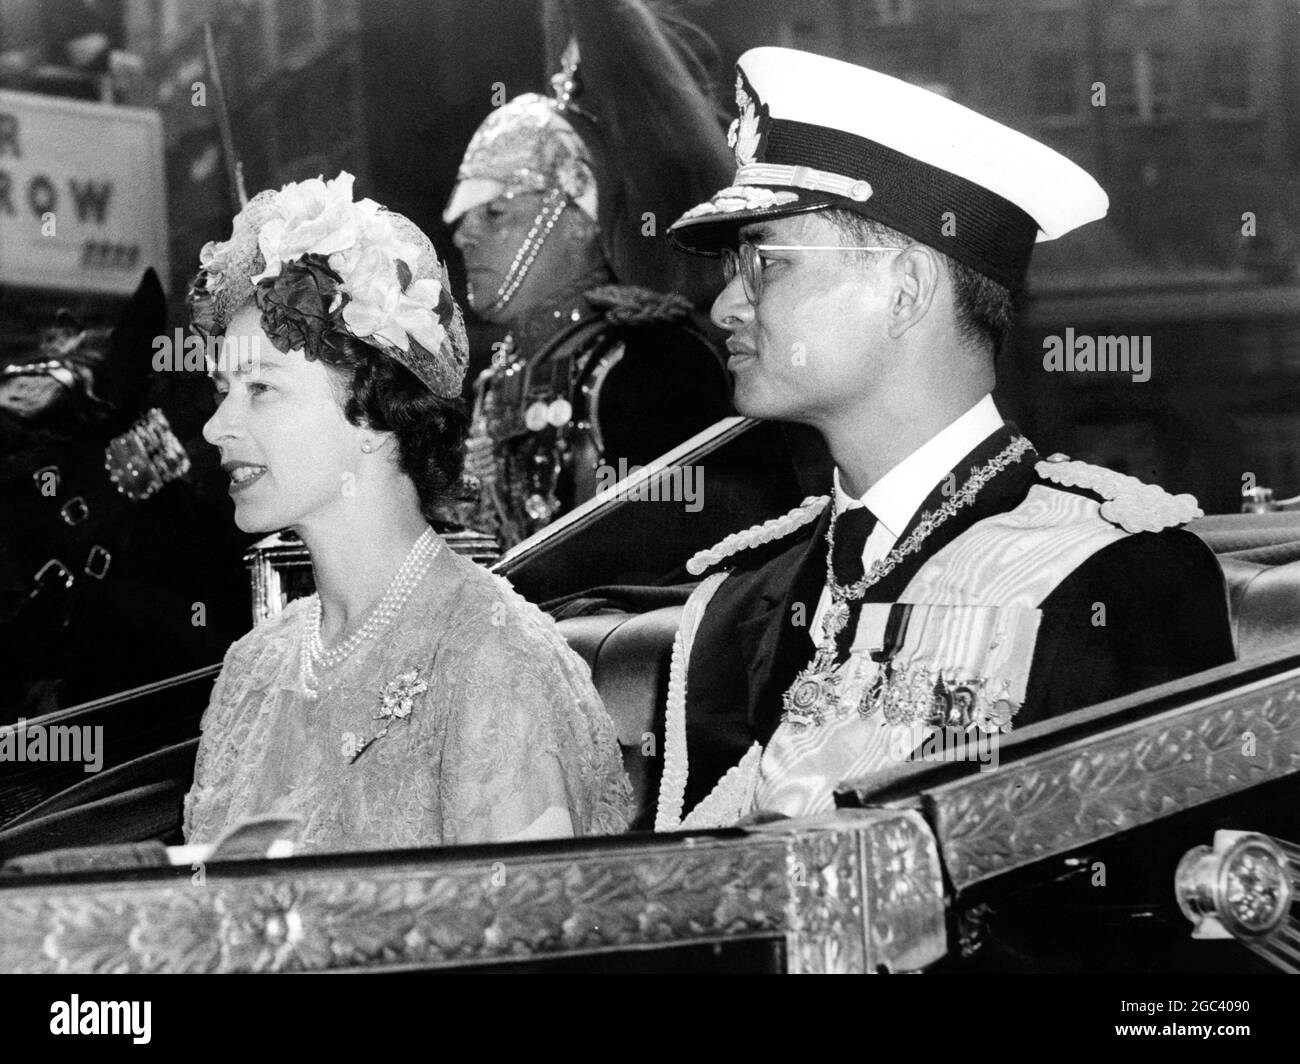 Le roi et la reine de Thaïlande arrivent pour la visite d'État la reine Elizabeth II avec le roi Bhumipol vu en voiture à ciel ouvert jusqu'au palais de Buckingham après l'arrivée de ce dernier aujourd'hui 19 juillet 1960 Banque D'Images